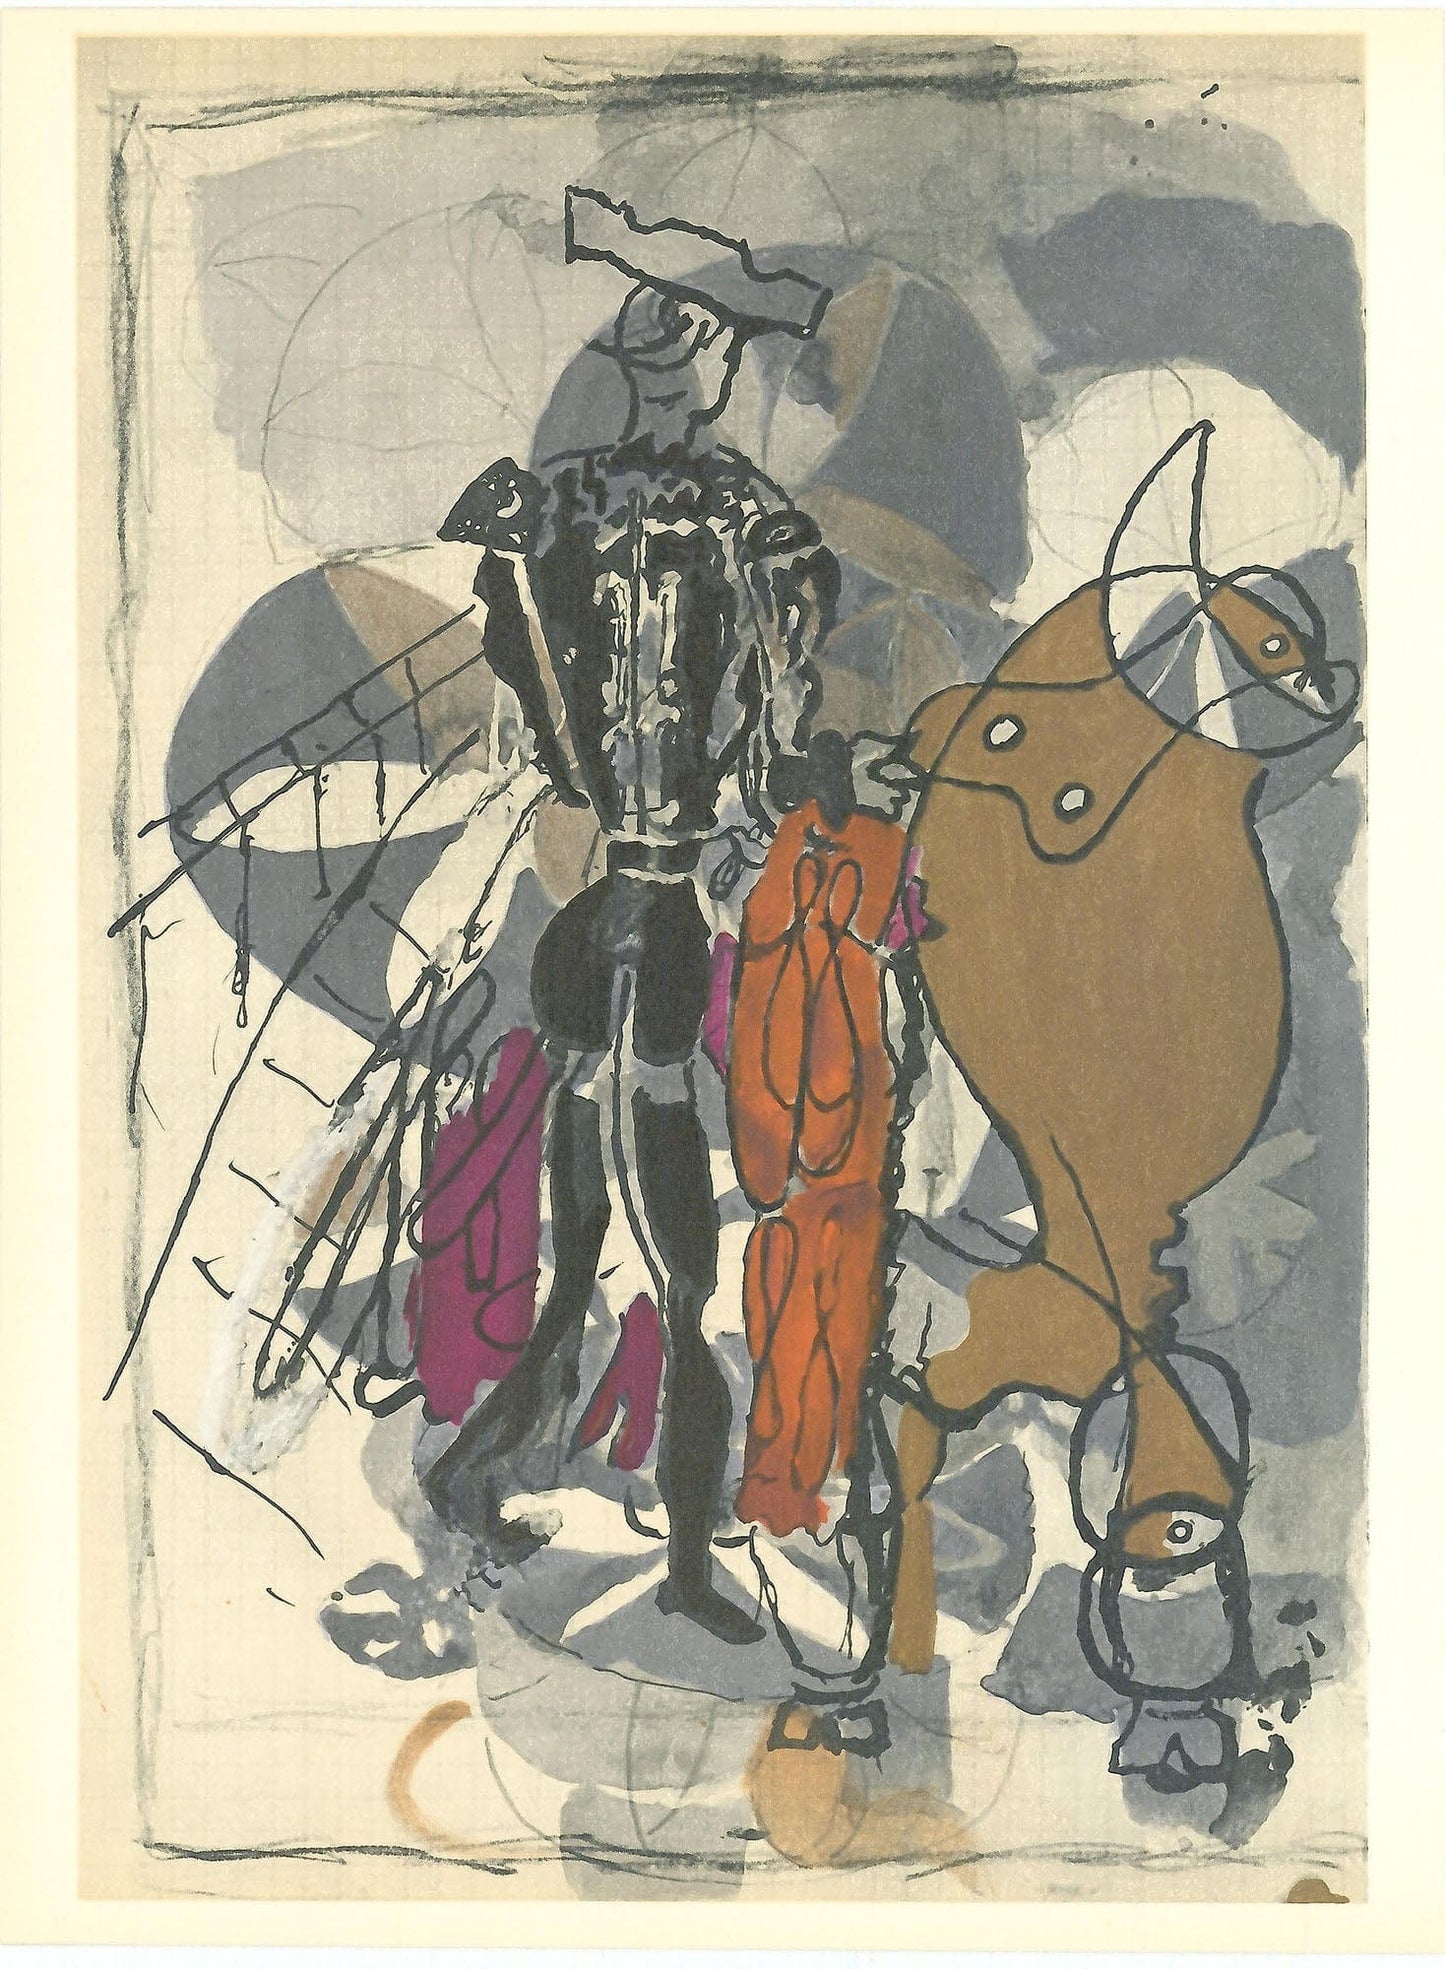 Georges Braque, "Untitled VIII" ZOOM Vol. 8 No. 31 ET 32 verve lithograph